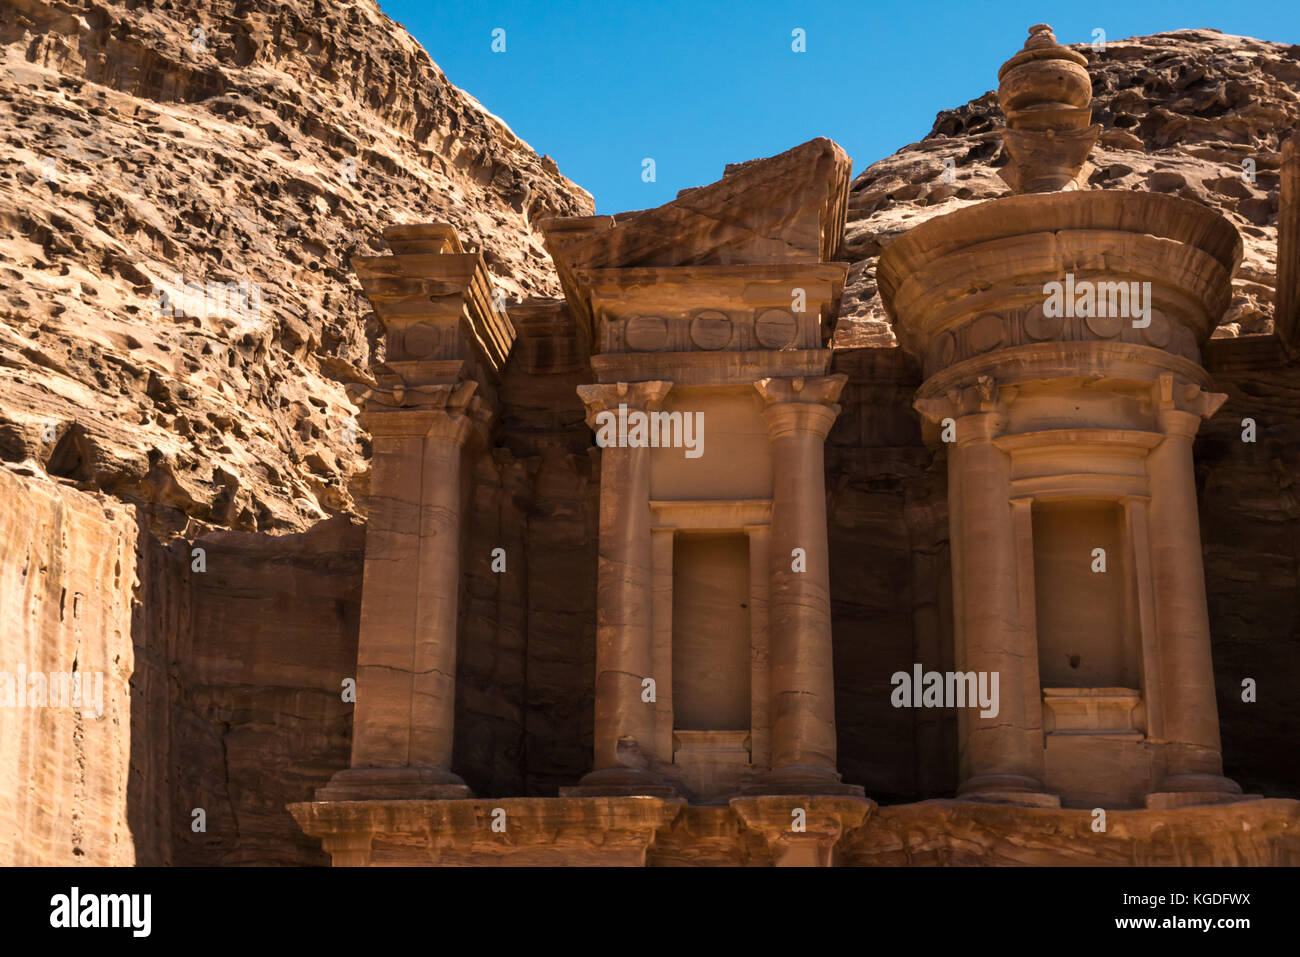 En grès rose sculpté nabatéenne tombe, Ad Deir, le monastère, Petra, Jordanie, Moyen-Orient, dans la lumière du matin Banque D'Images